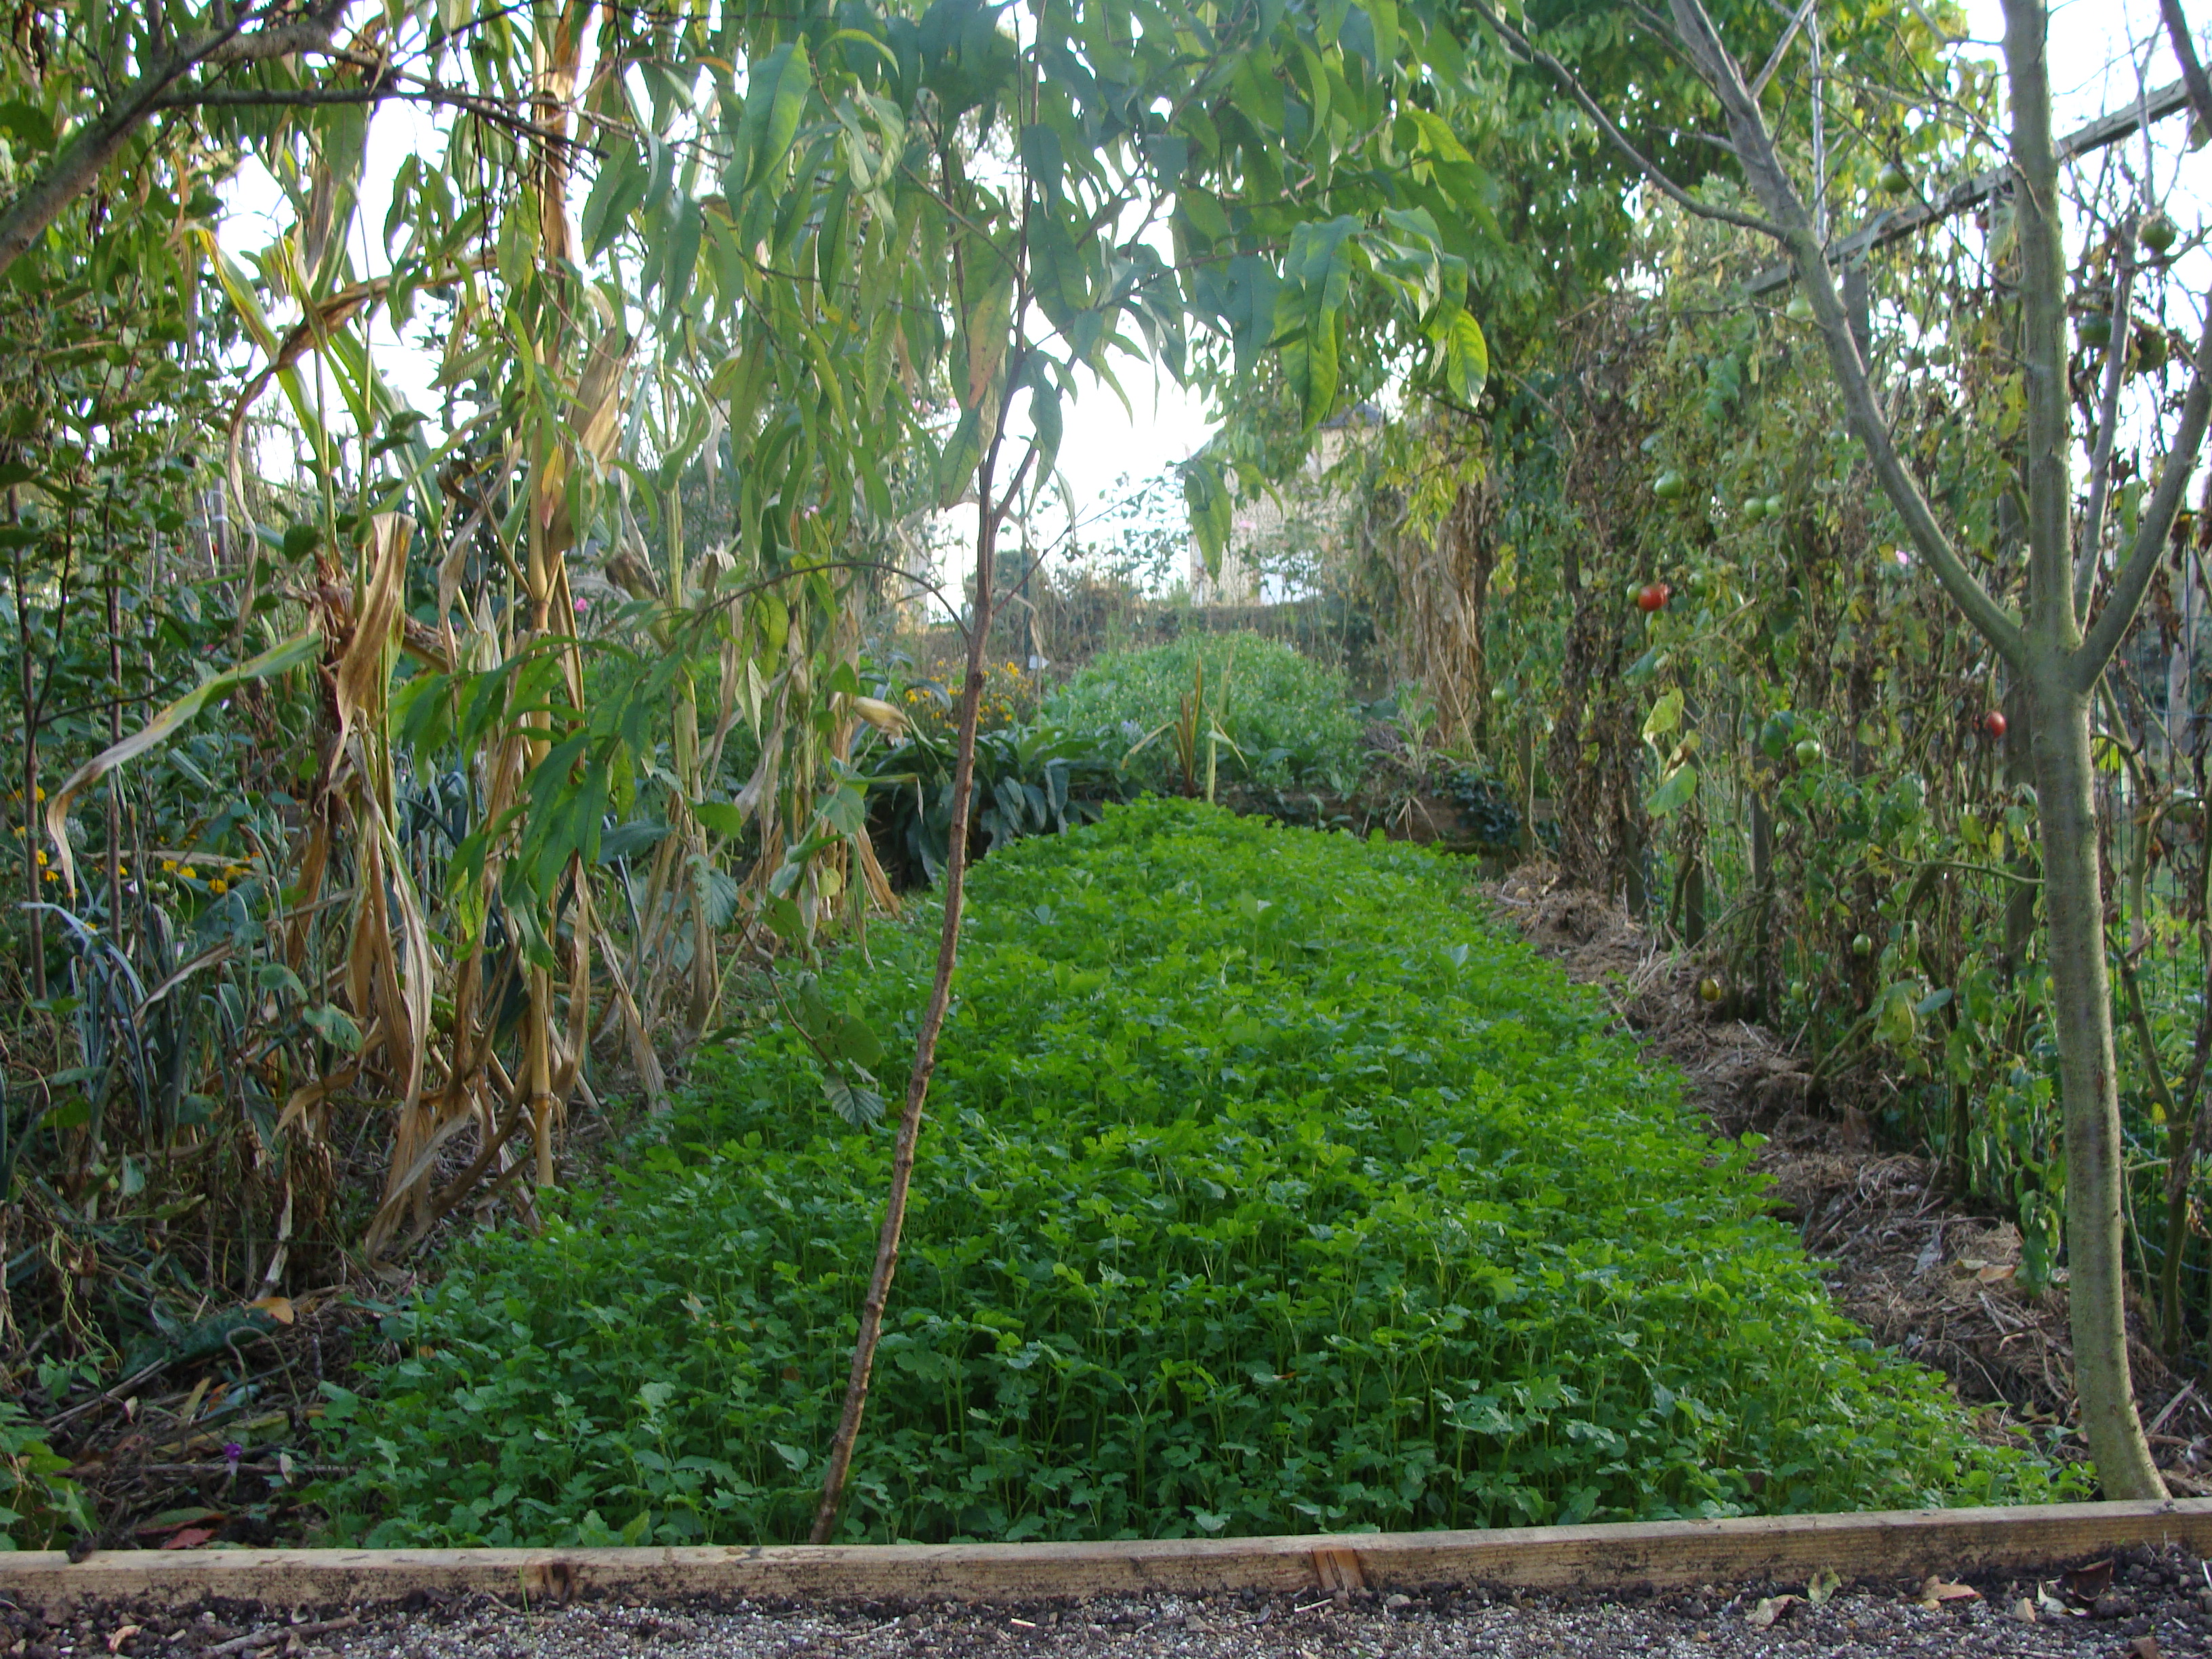 Le sarrasin ou blé noir, un engrais vert pour désherber : semis, plantation